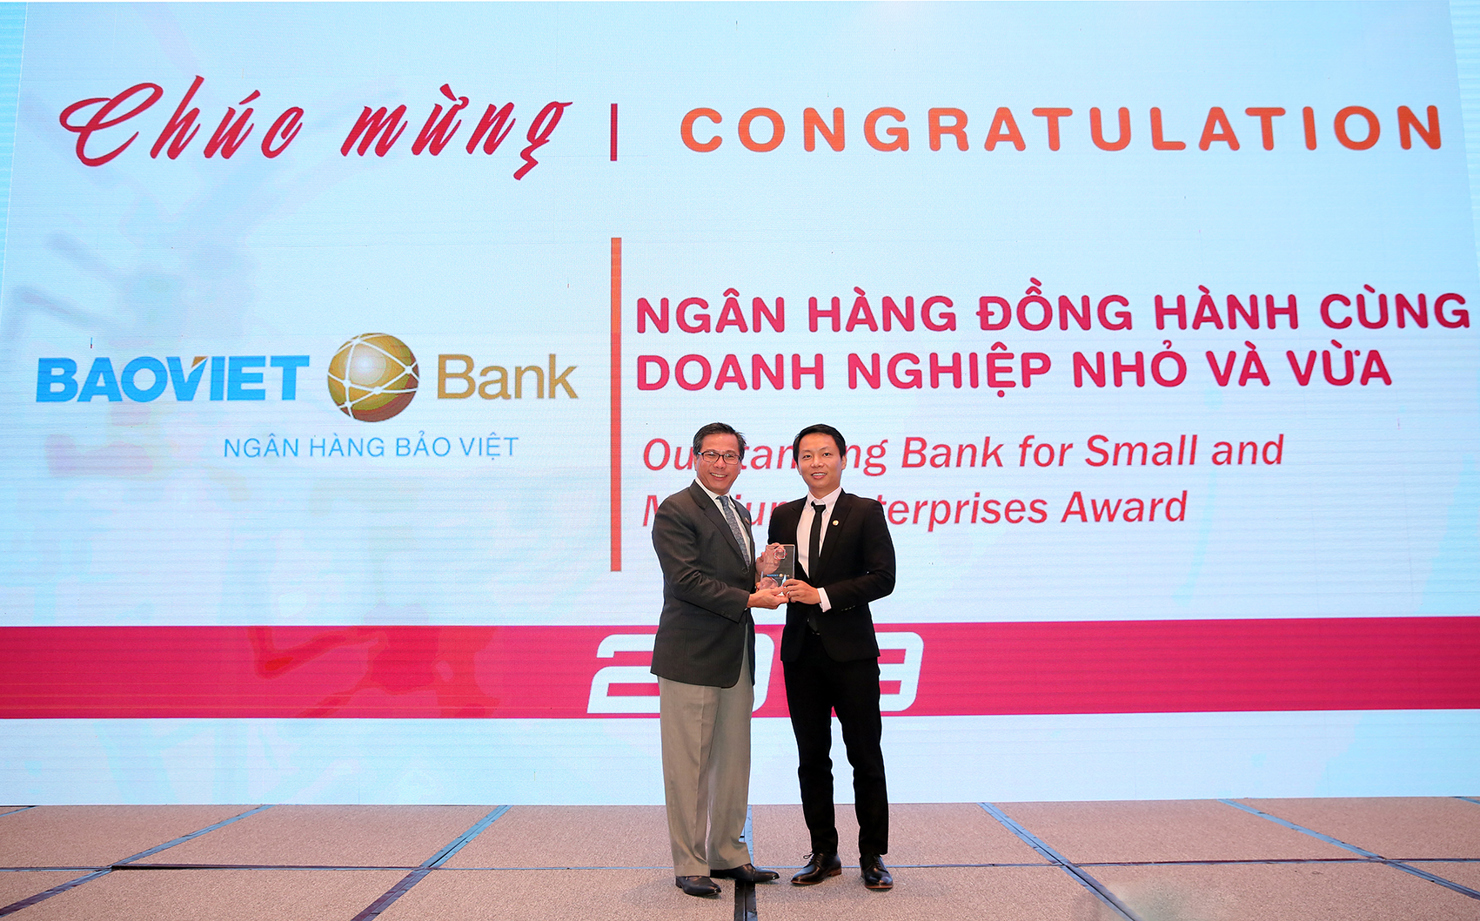 Ông Bùi Quang Vũ - Trưởng Văn phòng đại diện BAOVIET Bank tại TP. Hồ Chí Minh nhận giải thưởng “Ngân hàng đồng hành cùng Doanh nghiệp nhỏ và vừa năm 2019” cho BAOVIET Bank.